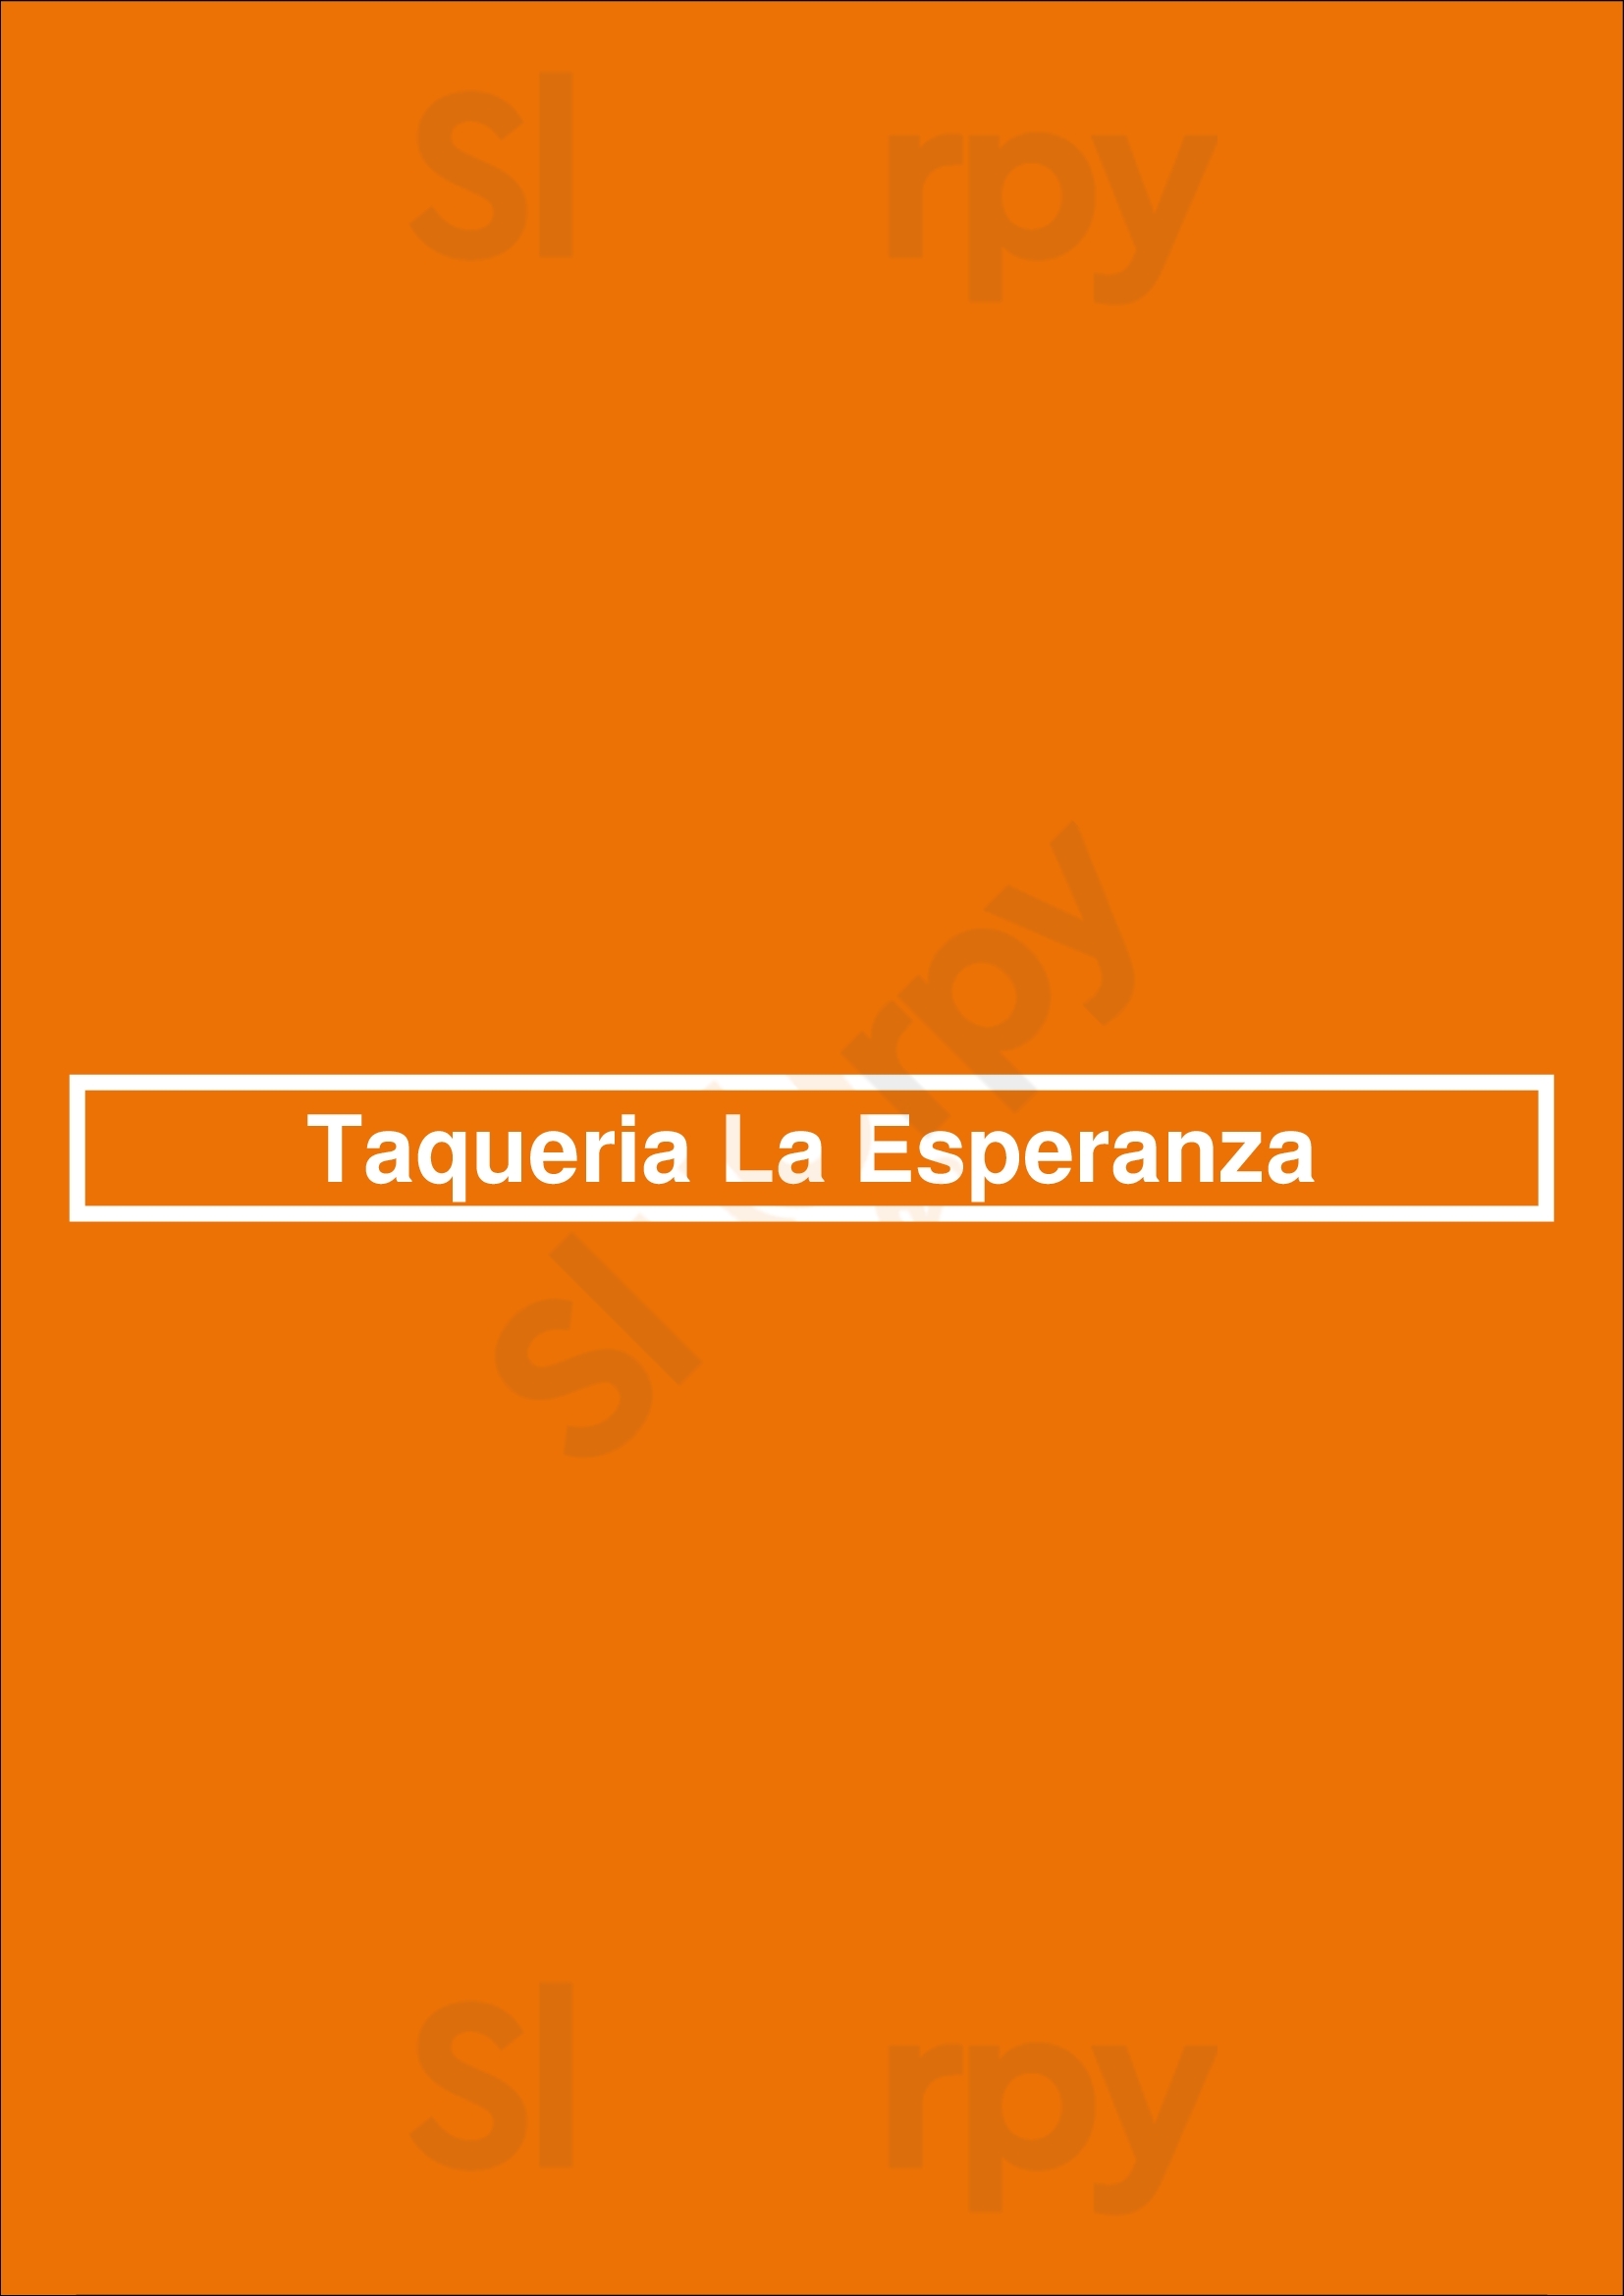 Taqueria La Esperanza Lafayette Menu - 1